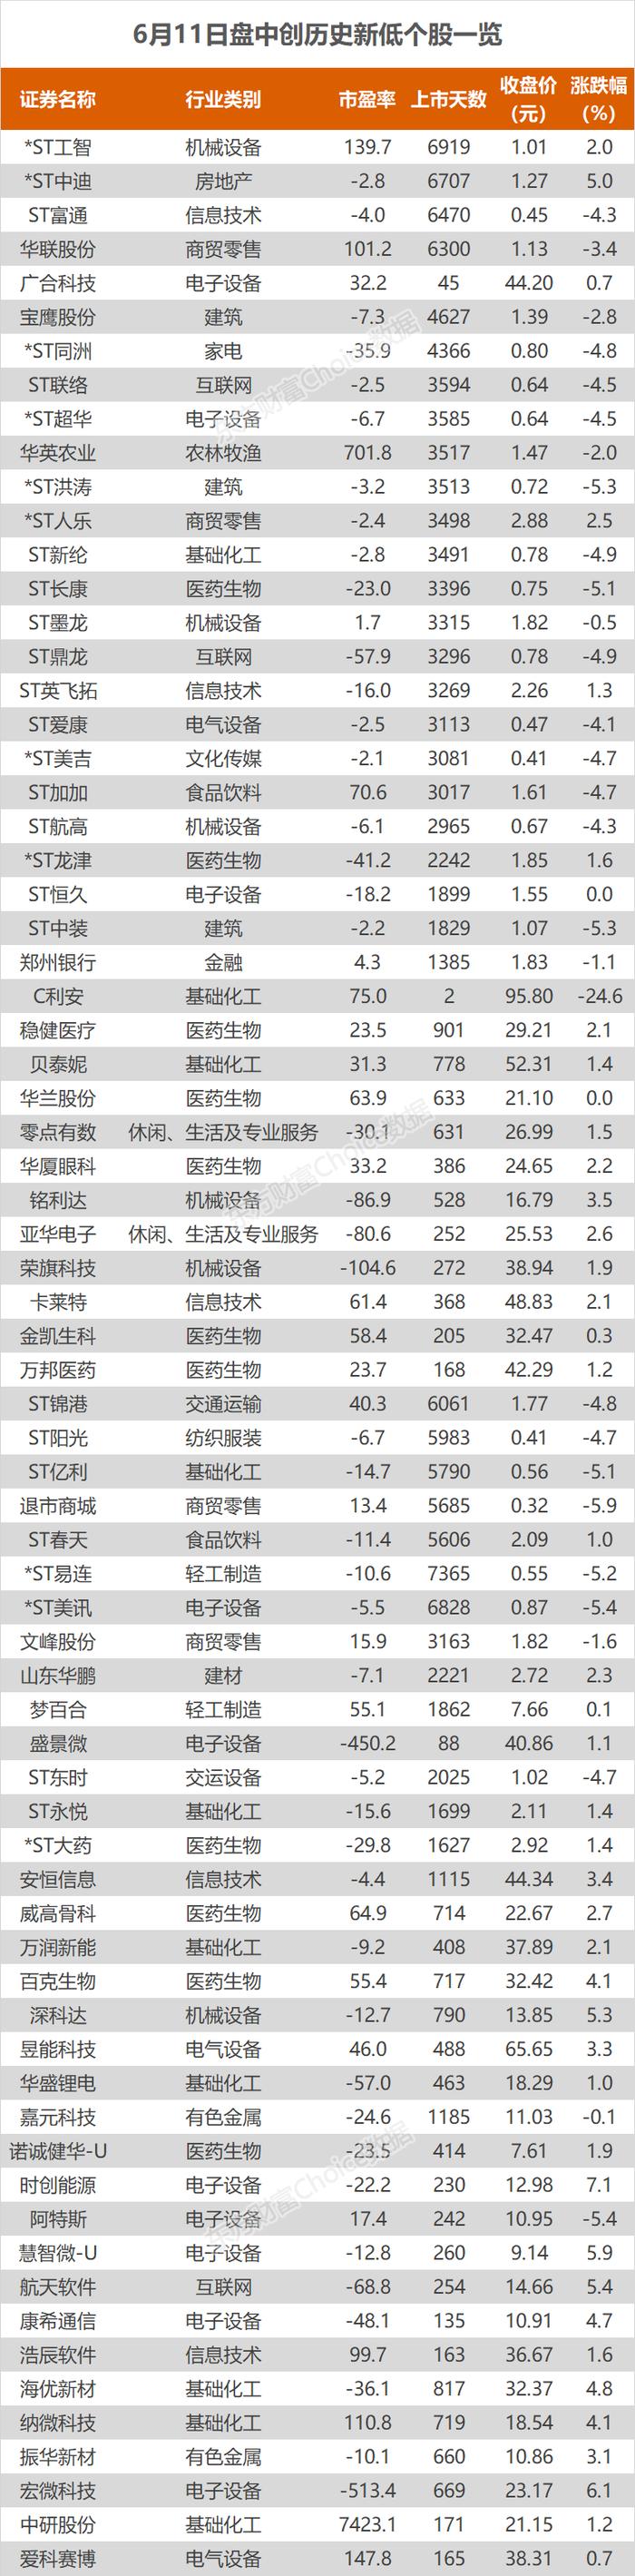 沪指跌0.76% 国投电力、长江电力等创历史新高